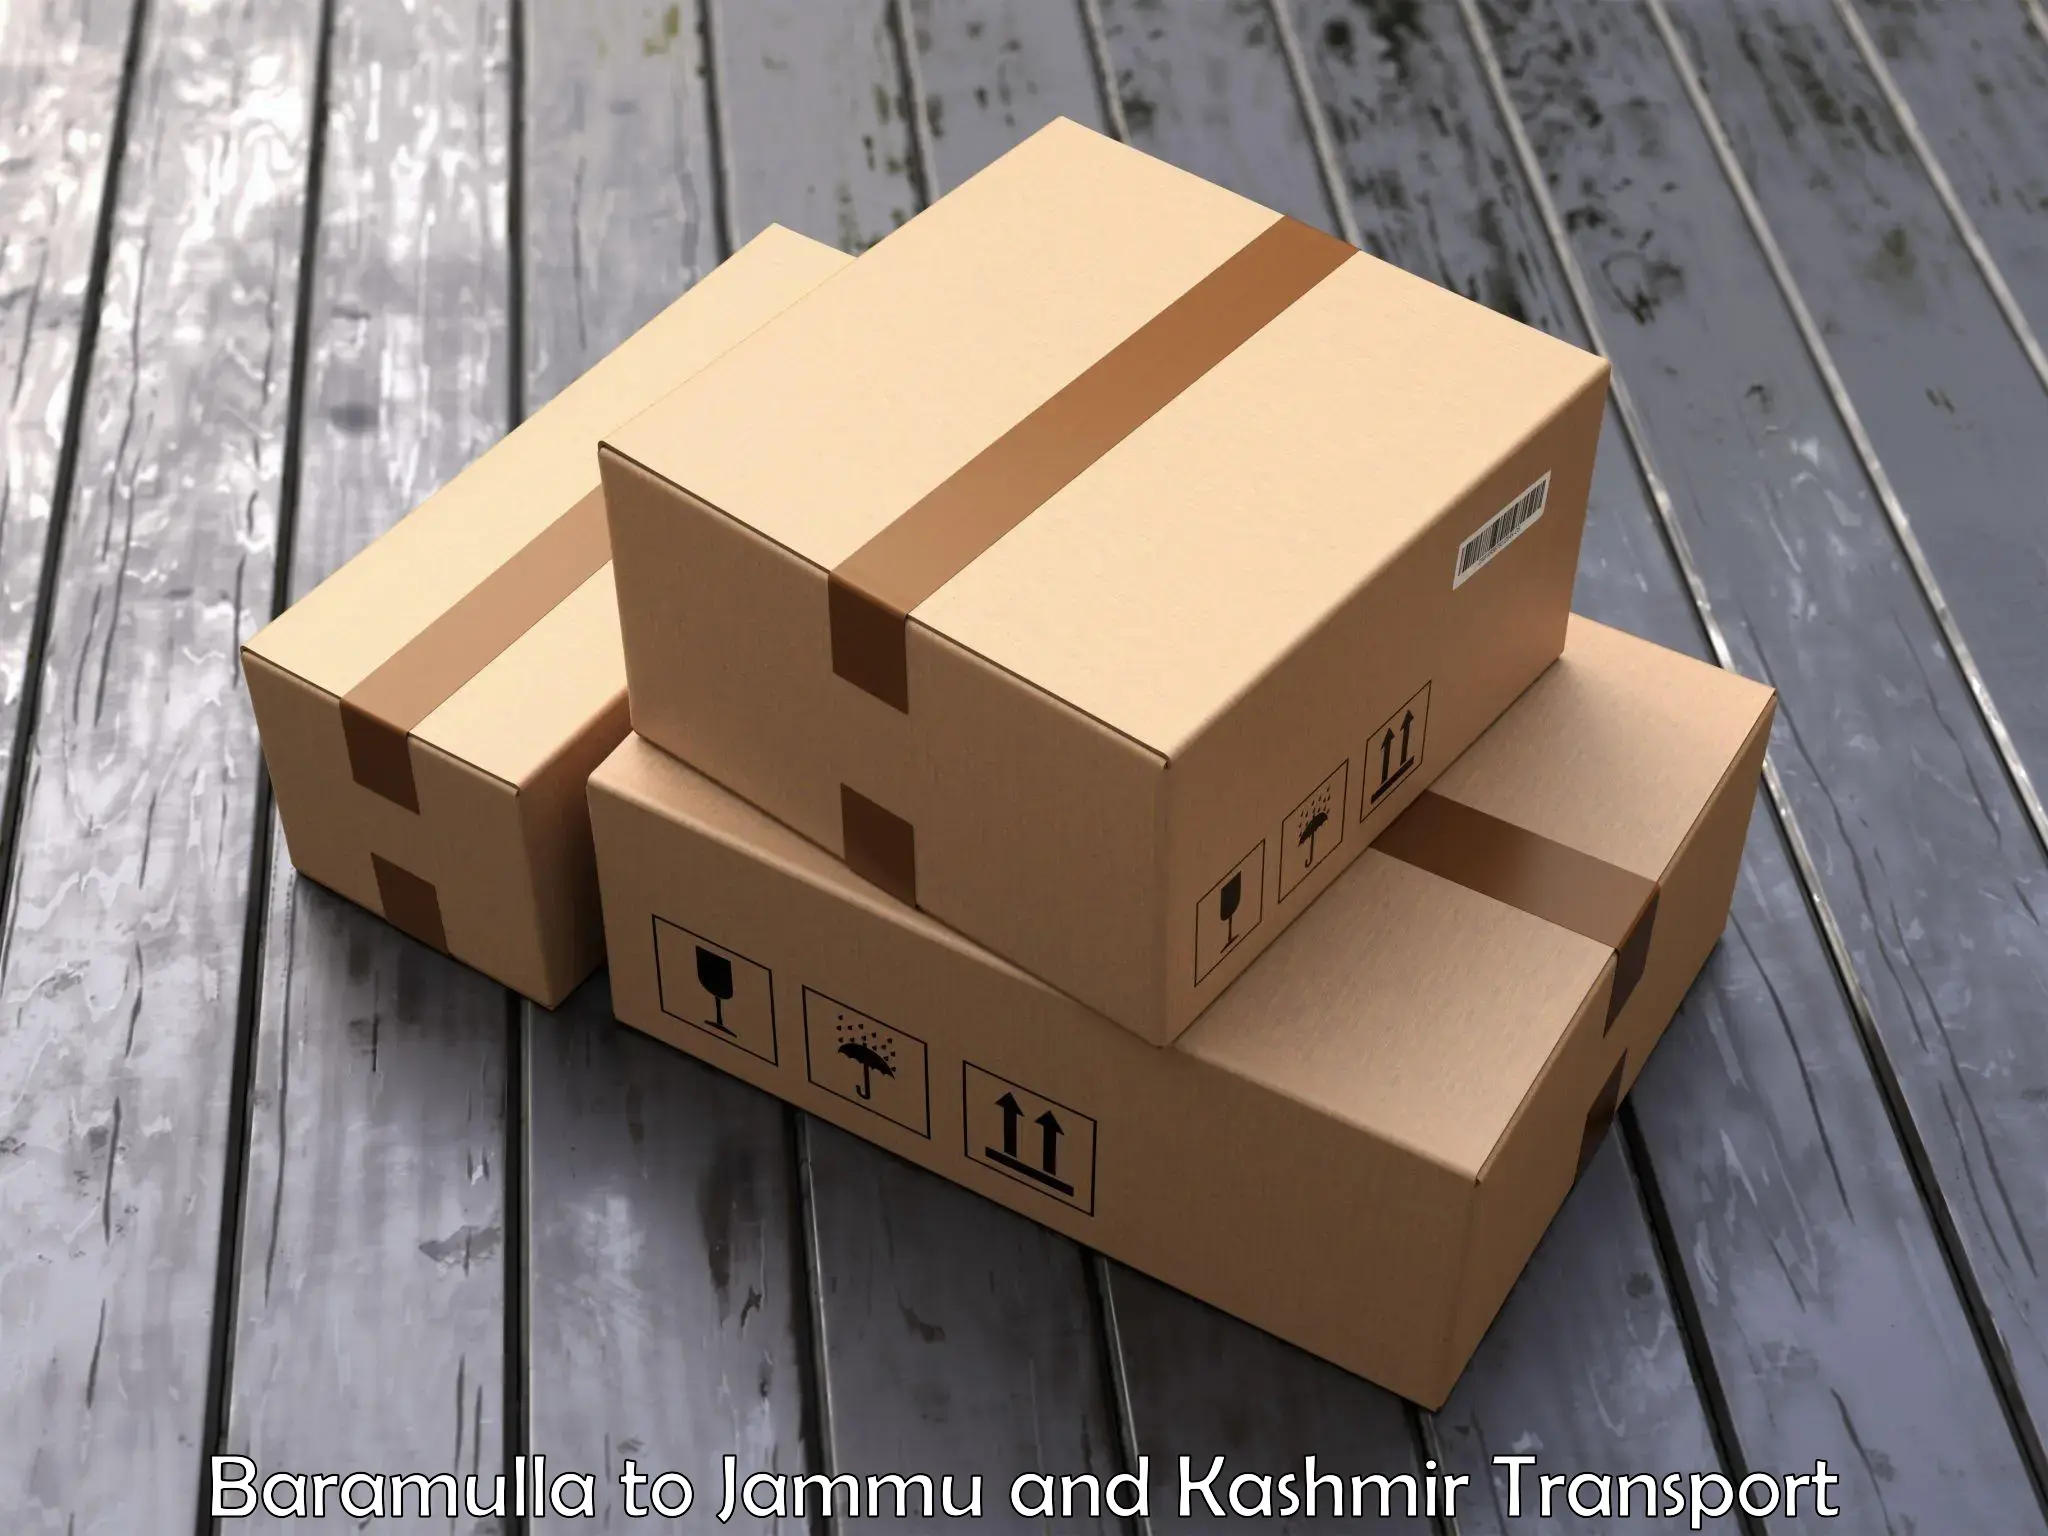 Truck transport companies in India Baramulla to Srinagar Kashmir